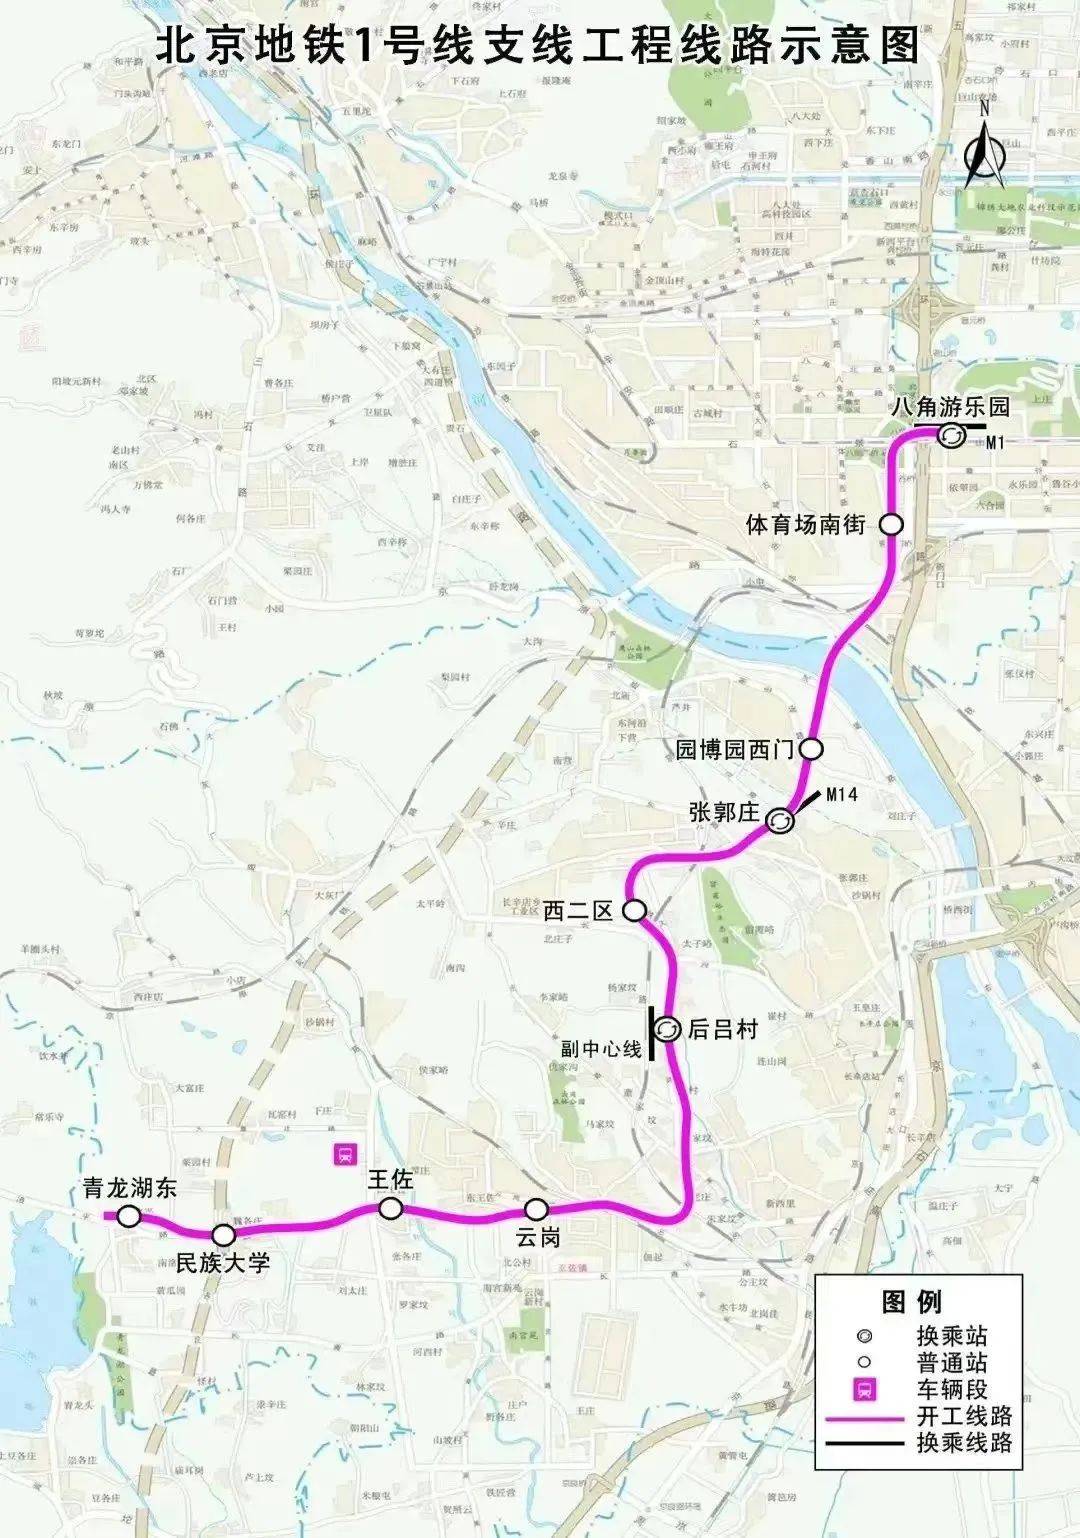 1号线支线工程丰台区段自永定河东岸至青龙湖东站,线路长度约17